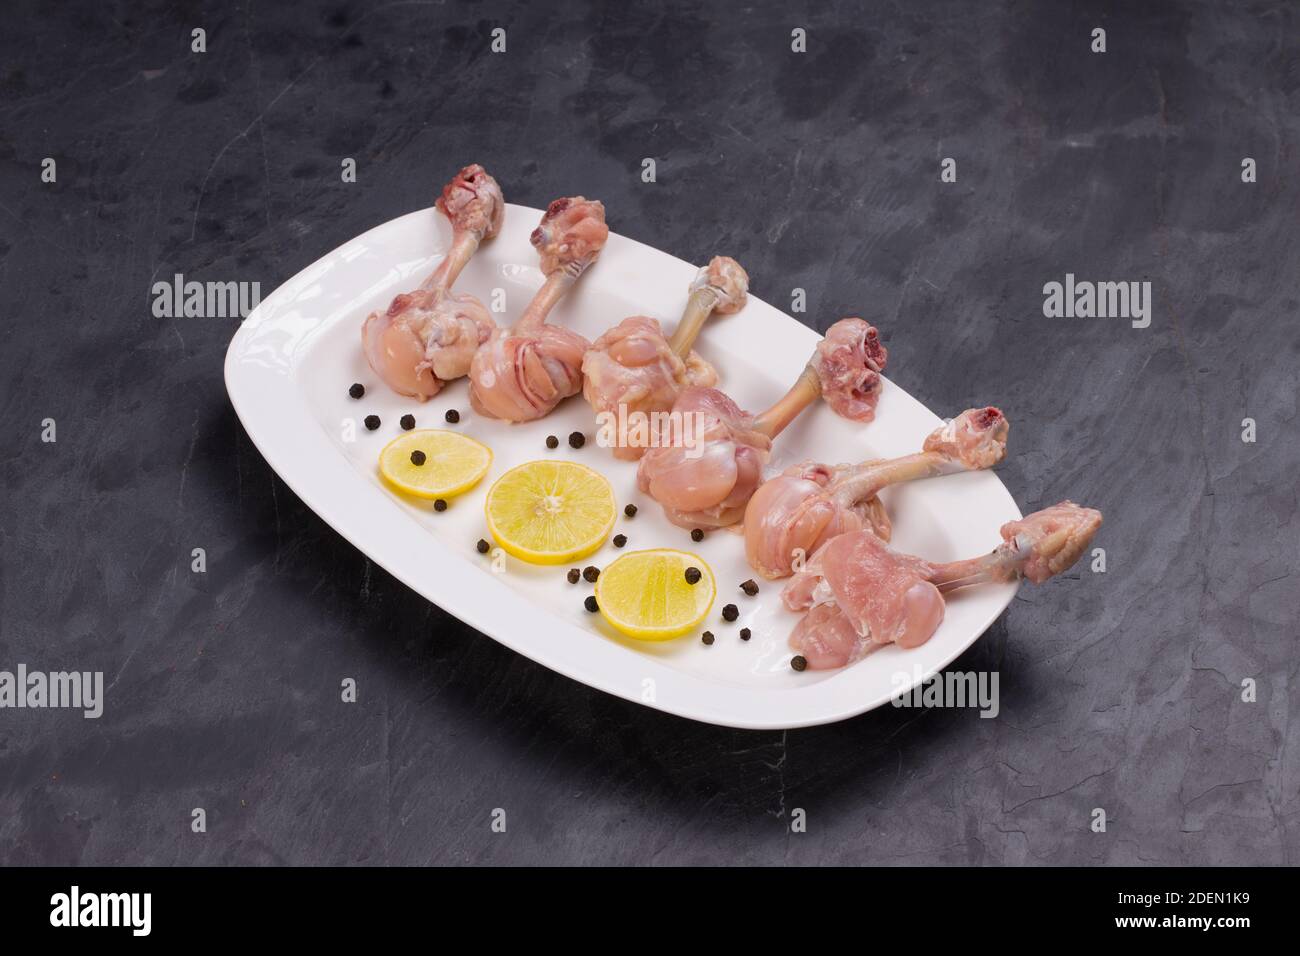 Lollipop de poulet cru, six morceaux de Lollipop de poulet disposés sur un servir une assiette blanche et garni de tranches de citron et de noir poivre sur texture grise Banque D'Images